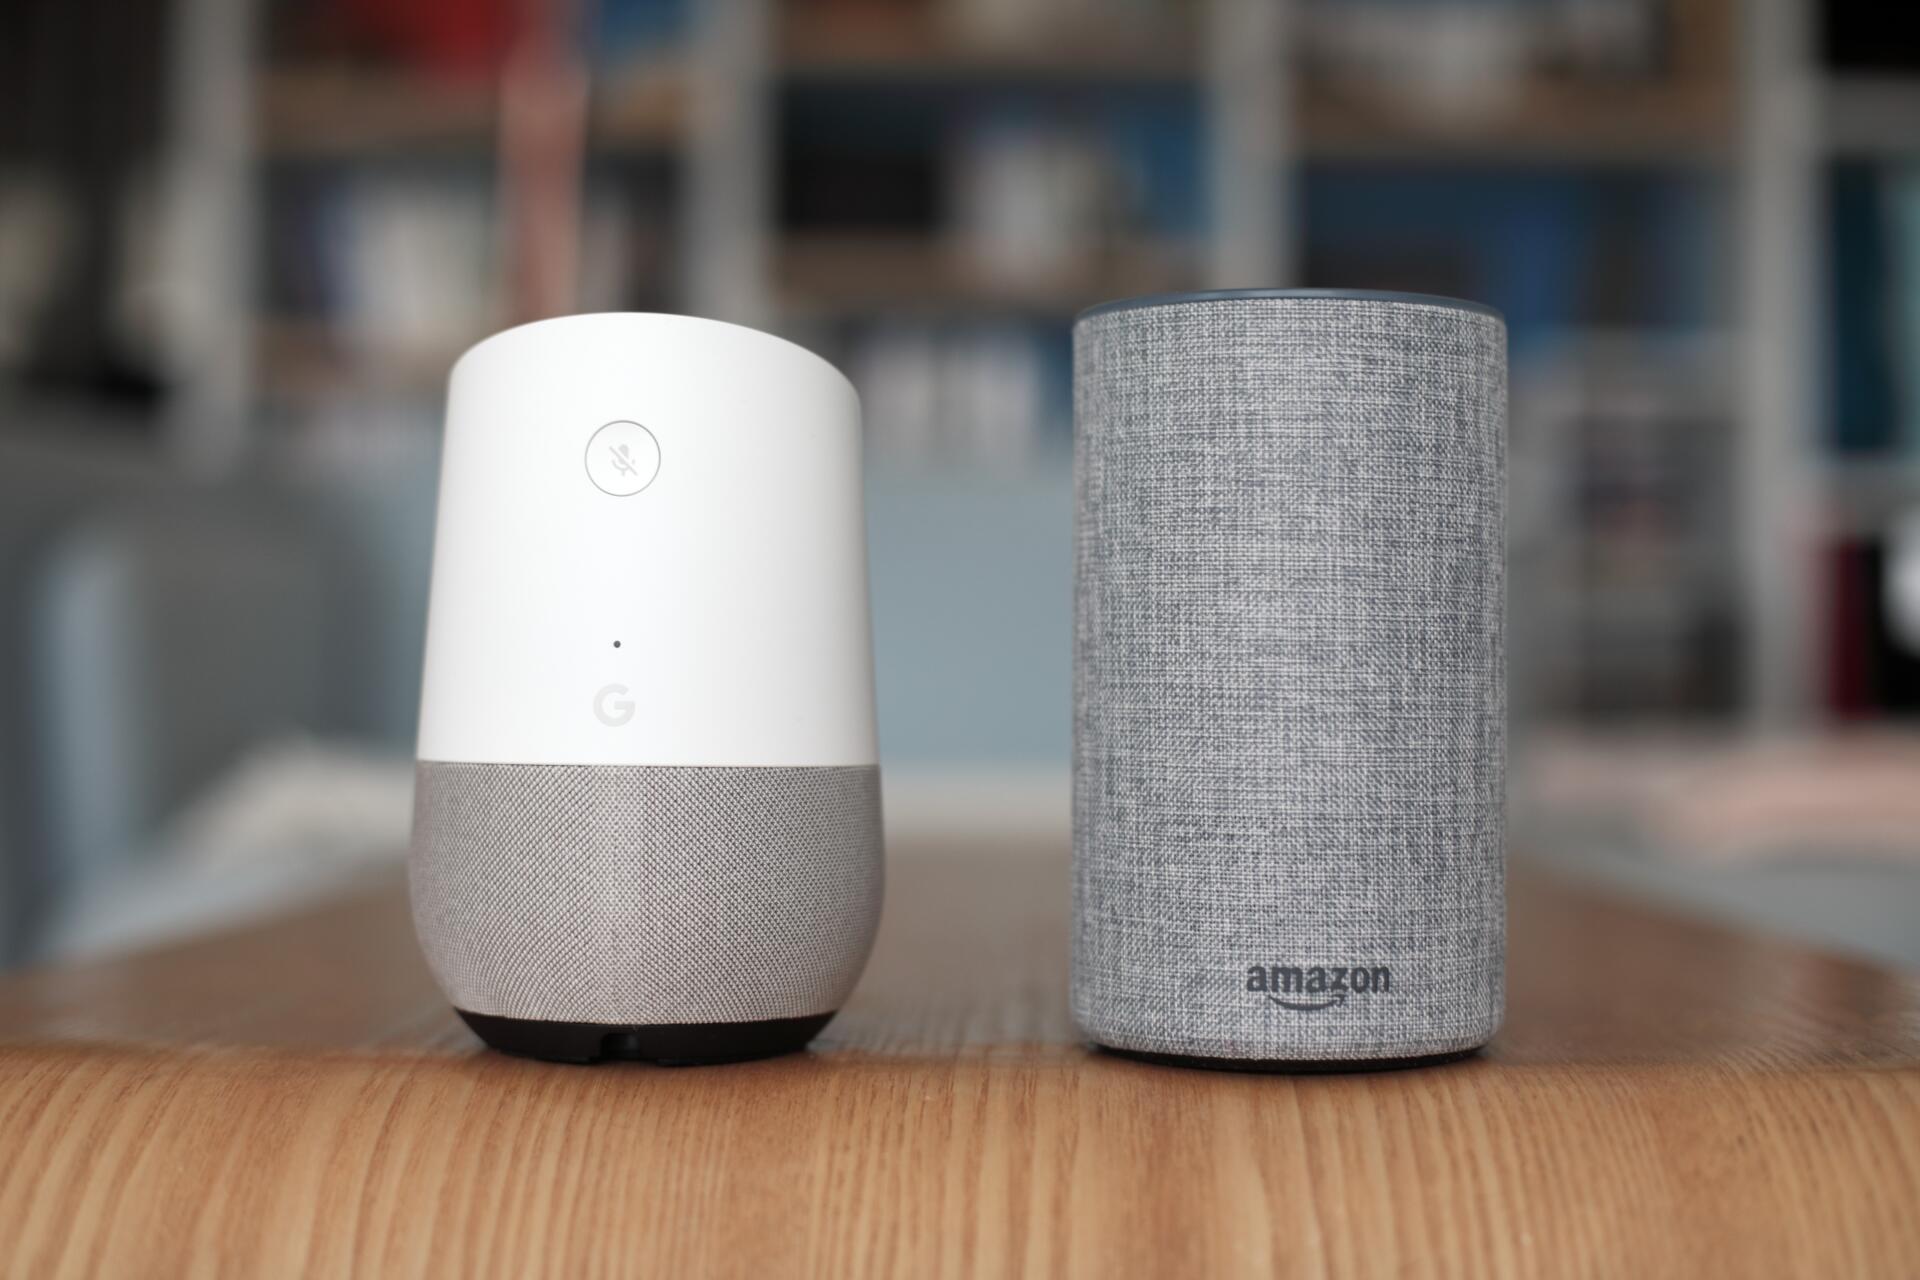 Les enceintes Google Home et Amazon Echo, un peu plus volumineuses qu’une canette de soda.